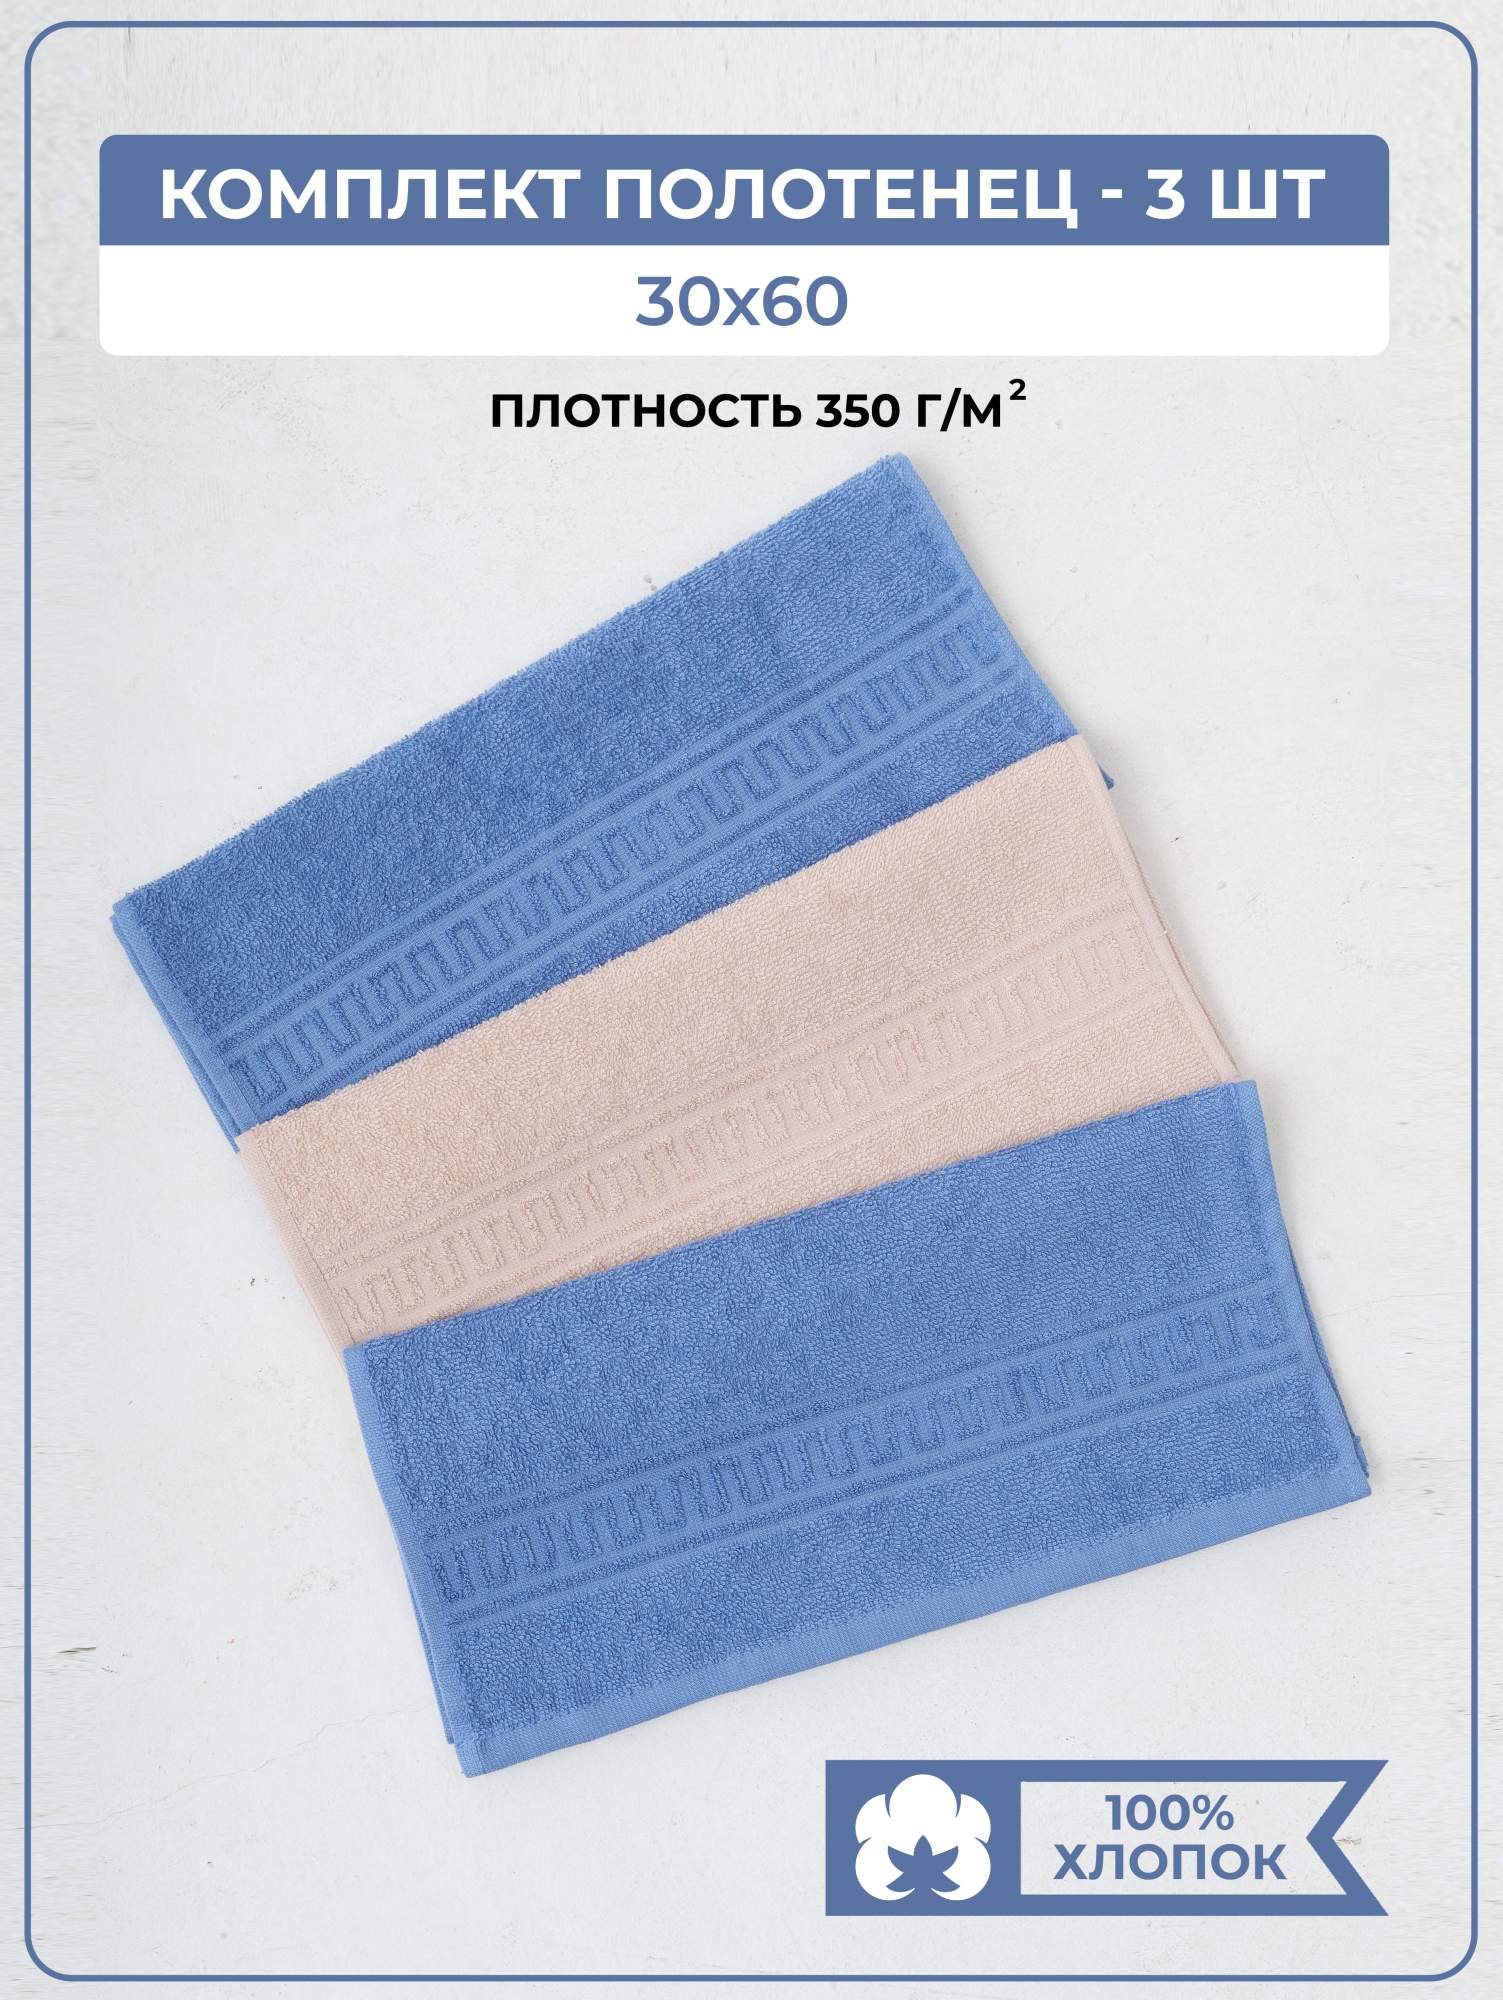 Полотенце COMFORT LIFE 3 шт – купить в Москве, цены в интернет-магазинах на Мегамаркет - Маркетплейс megamarket.ru